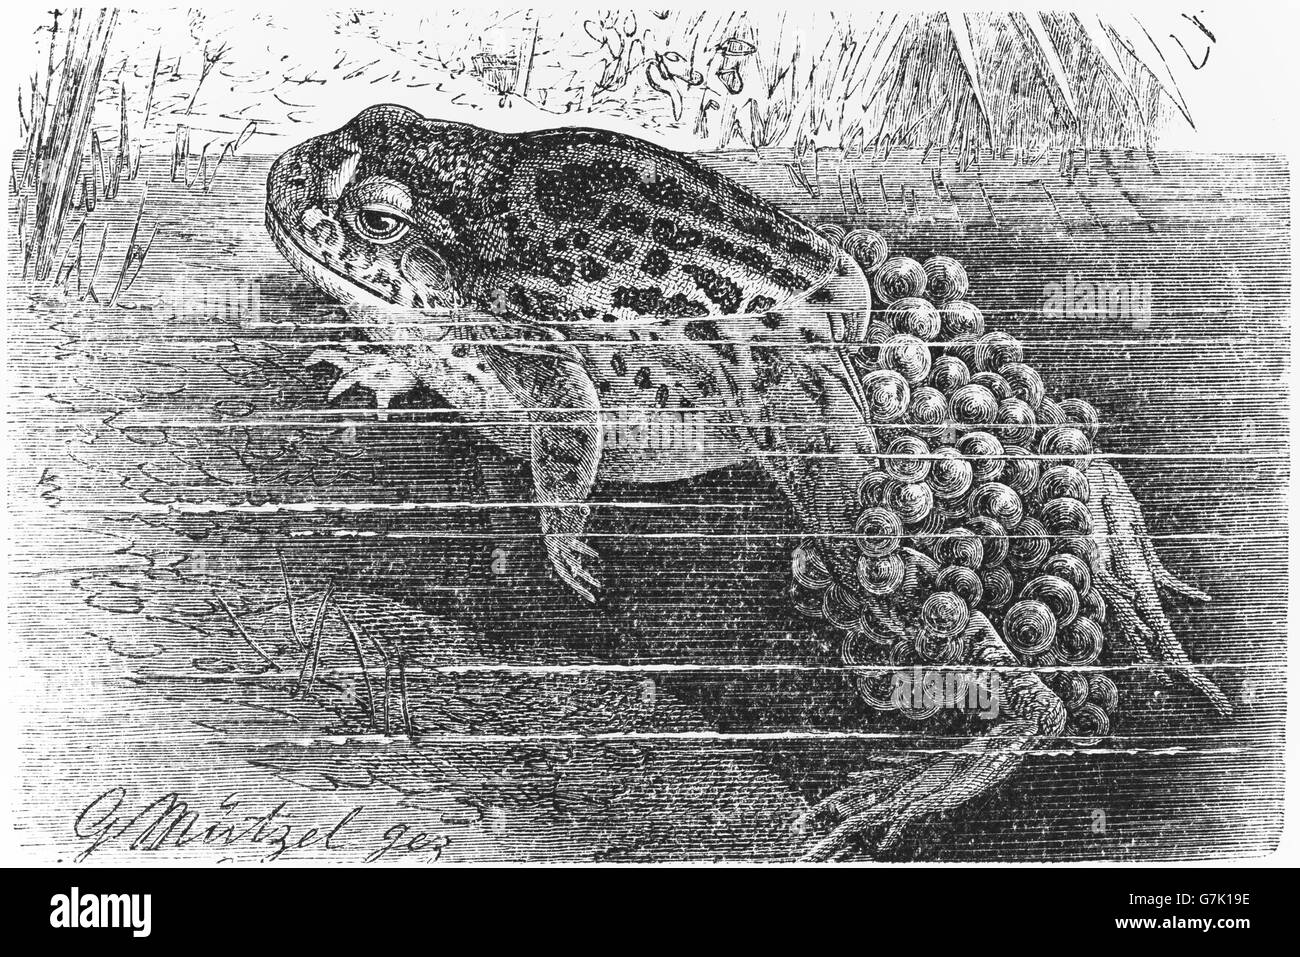 Sage-femme commune, crapaud Alytes obstetricans, grenouille, amphibien, illustration de livre daté 1904 Banque D'Images